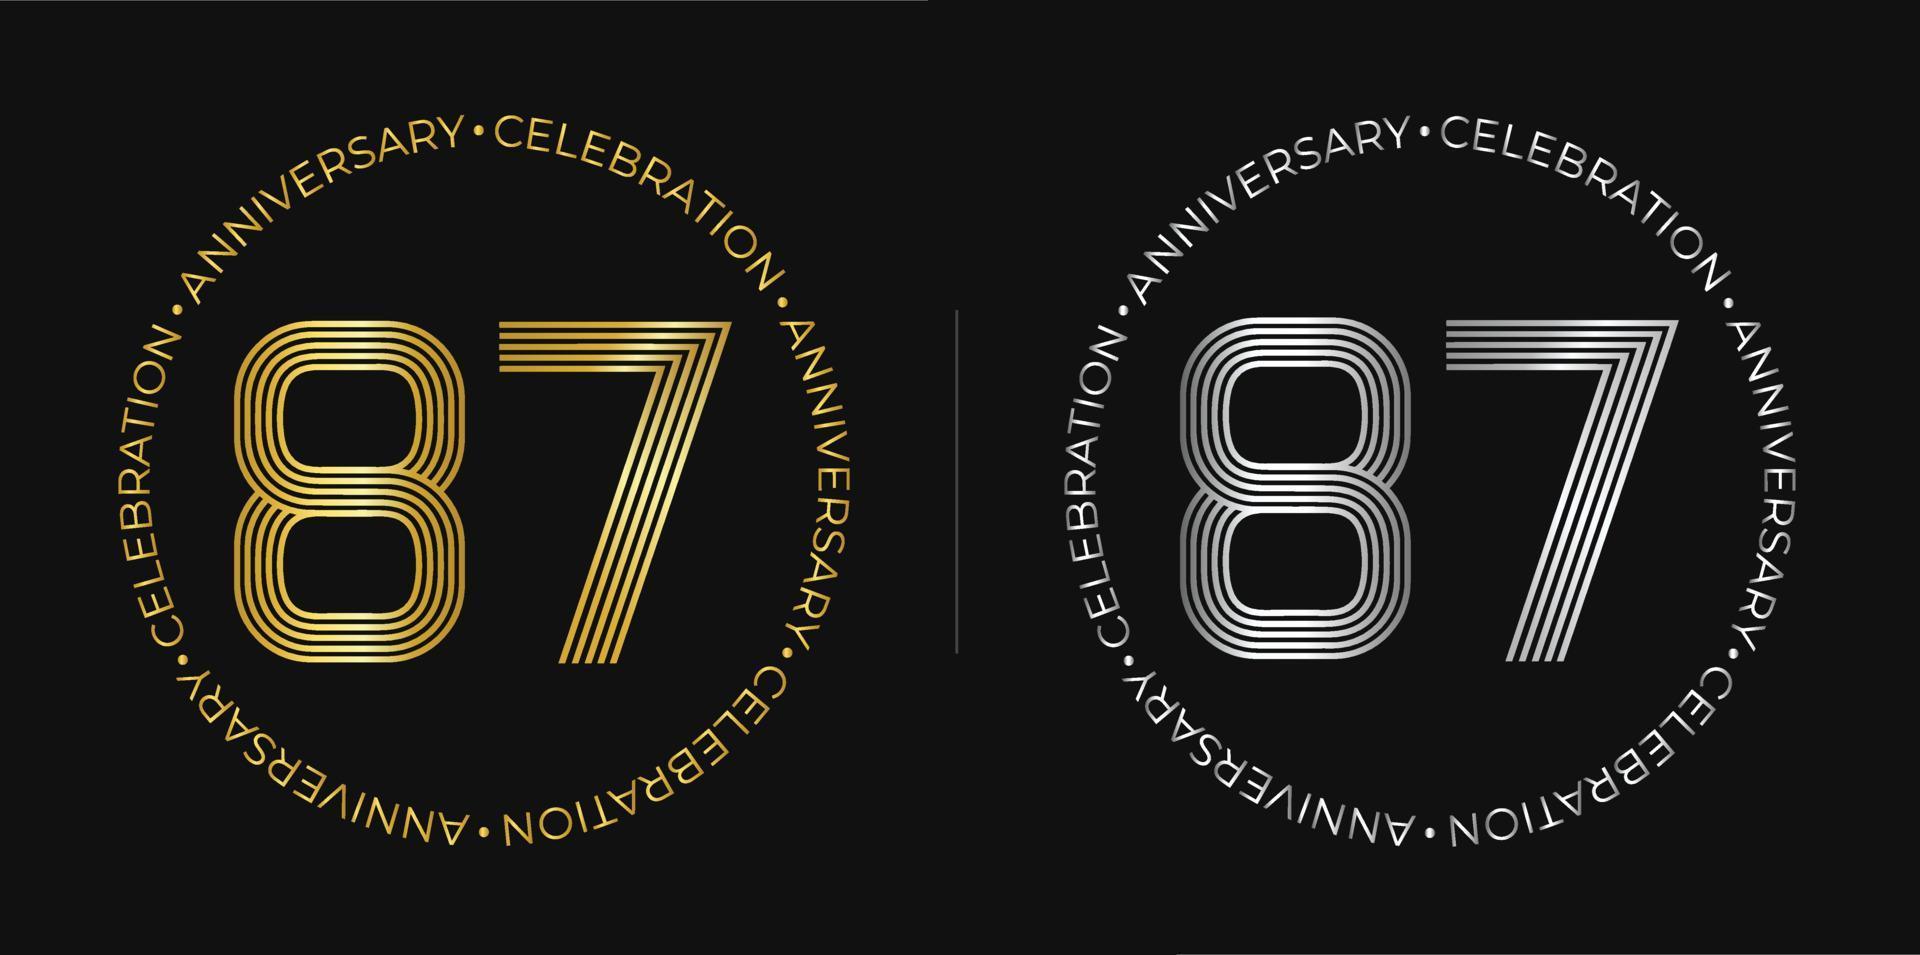 87e anniversaire. bannière de célébration d'anniversaire de quatre-vingt-sept ans aux couleurs dorées et argentées. logo circulaire avec des chiffres originaux aux lignes élégantes. vecteur